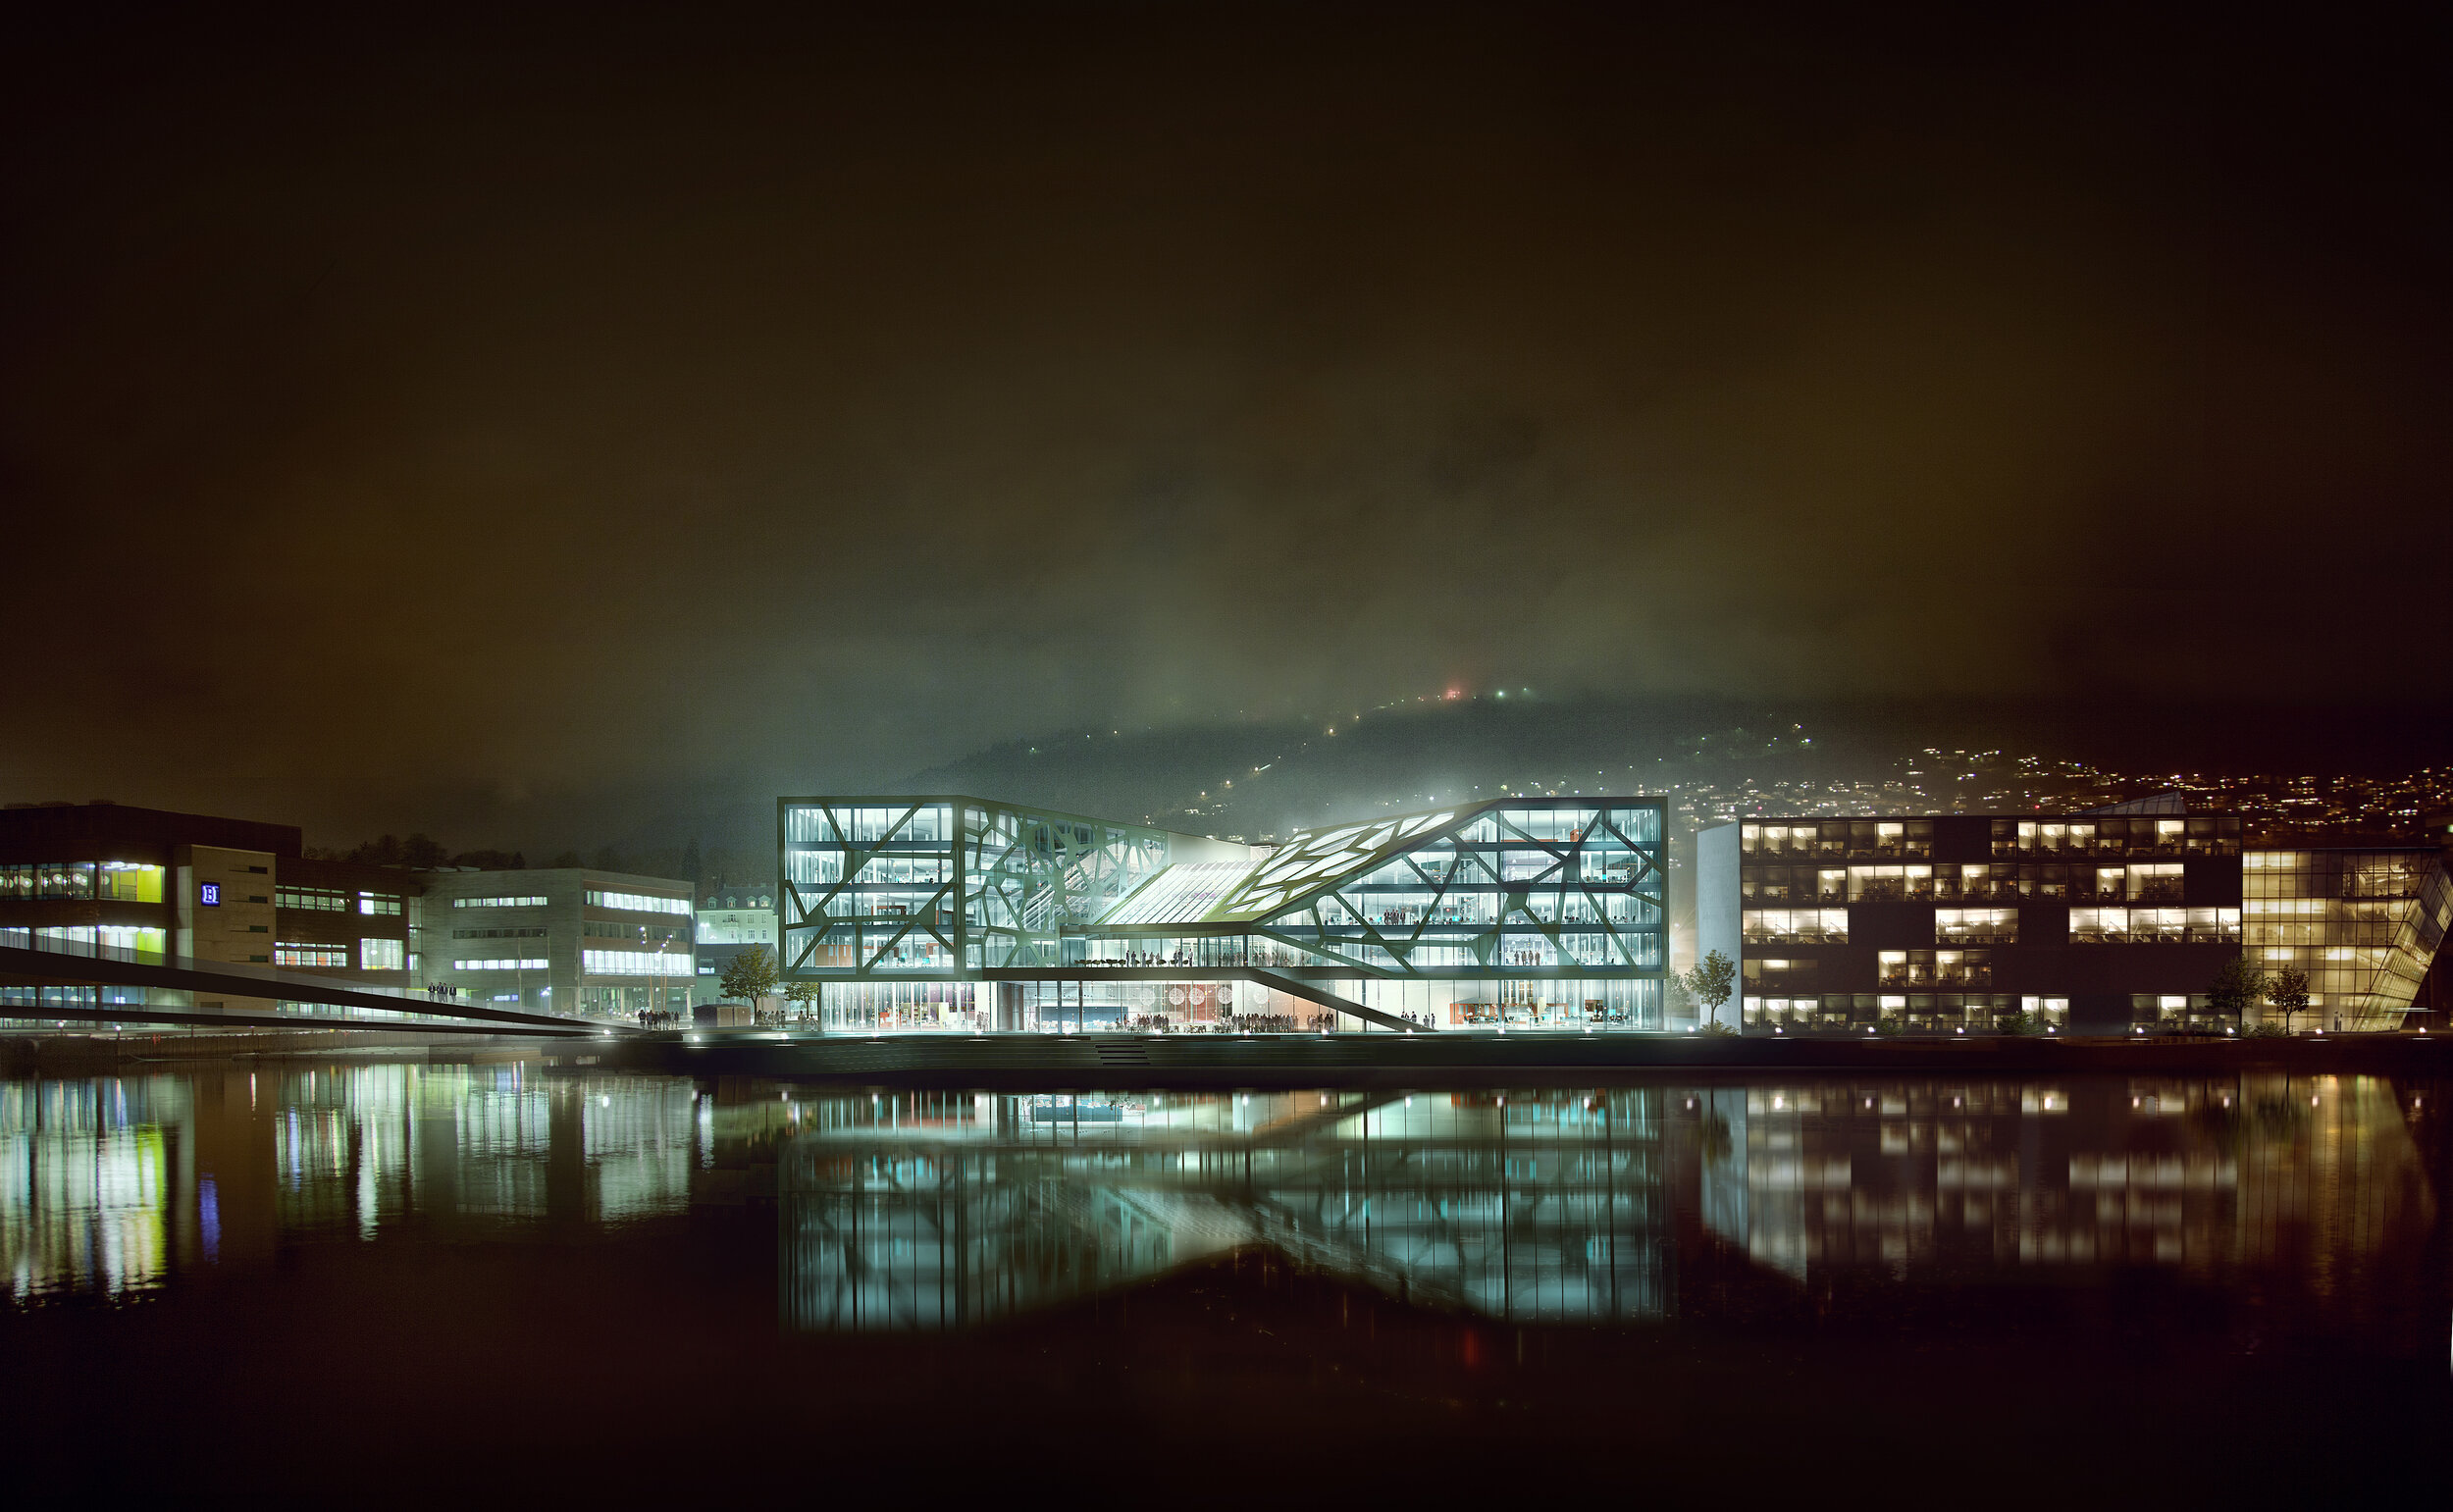   Sted:  Marineholmen, Bergen ▎ Status:  Konkurranse høst 2012 ▎ Areal:  ca 37 800 m² brutto ▎ Byggherre:  GC Rieber Eiendom as ▎ 